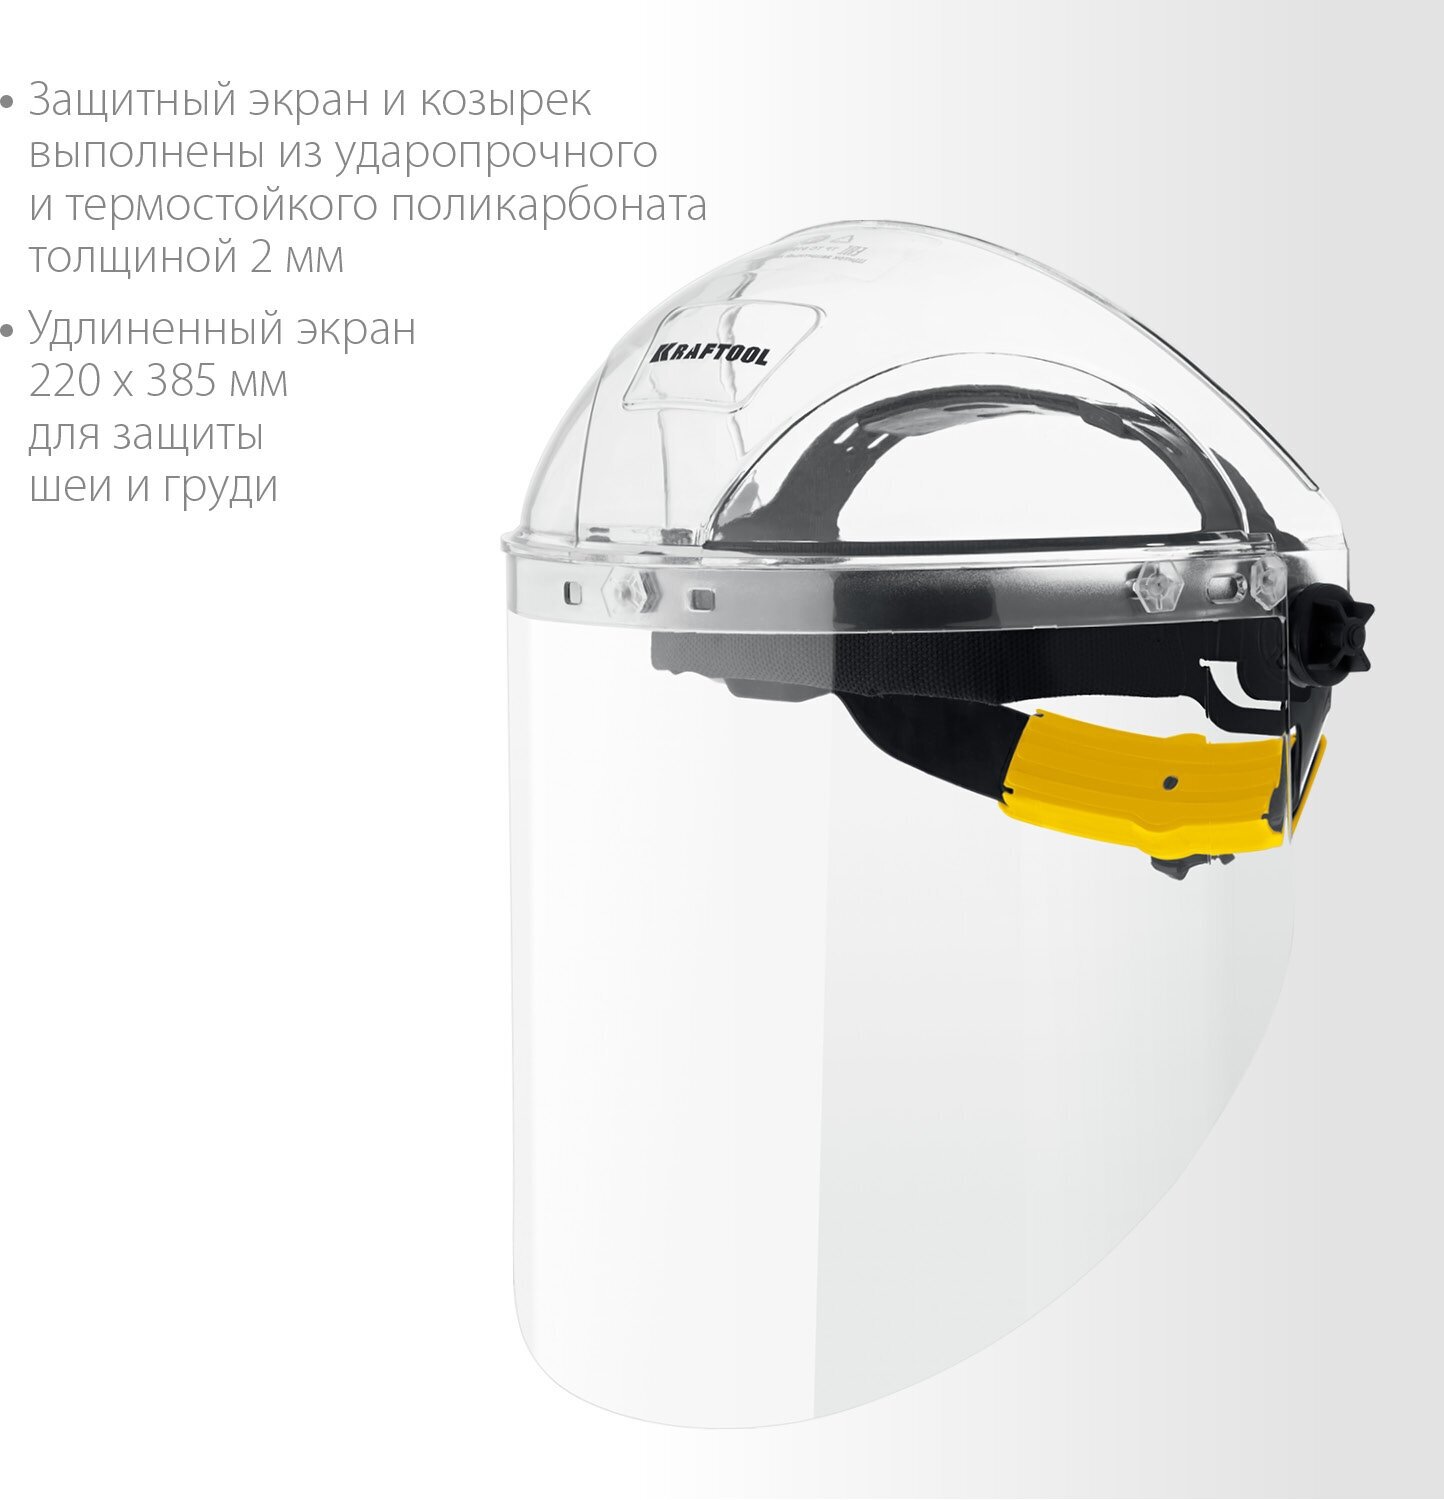 KRAFTOOL SPECTRA, удлинённый экран 220 х 385 мм, поликарбонат 2 мм, храповик, защитный лицевой щиток (110811)